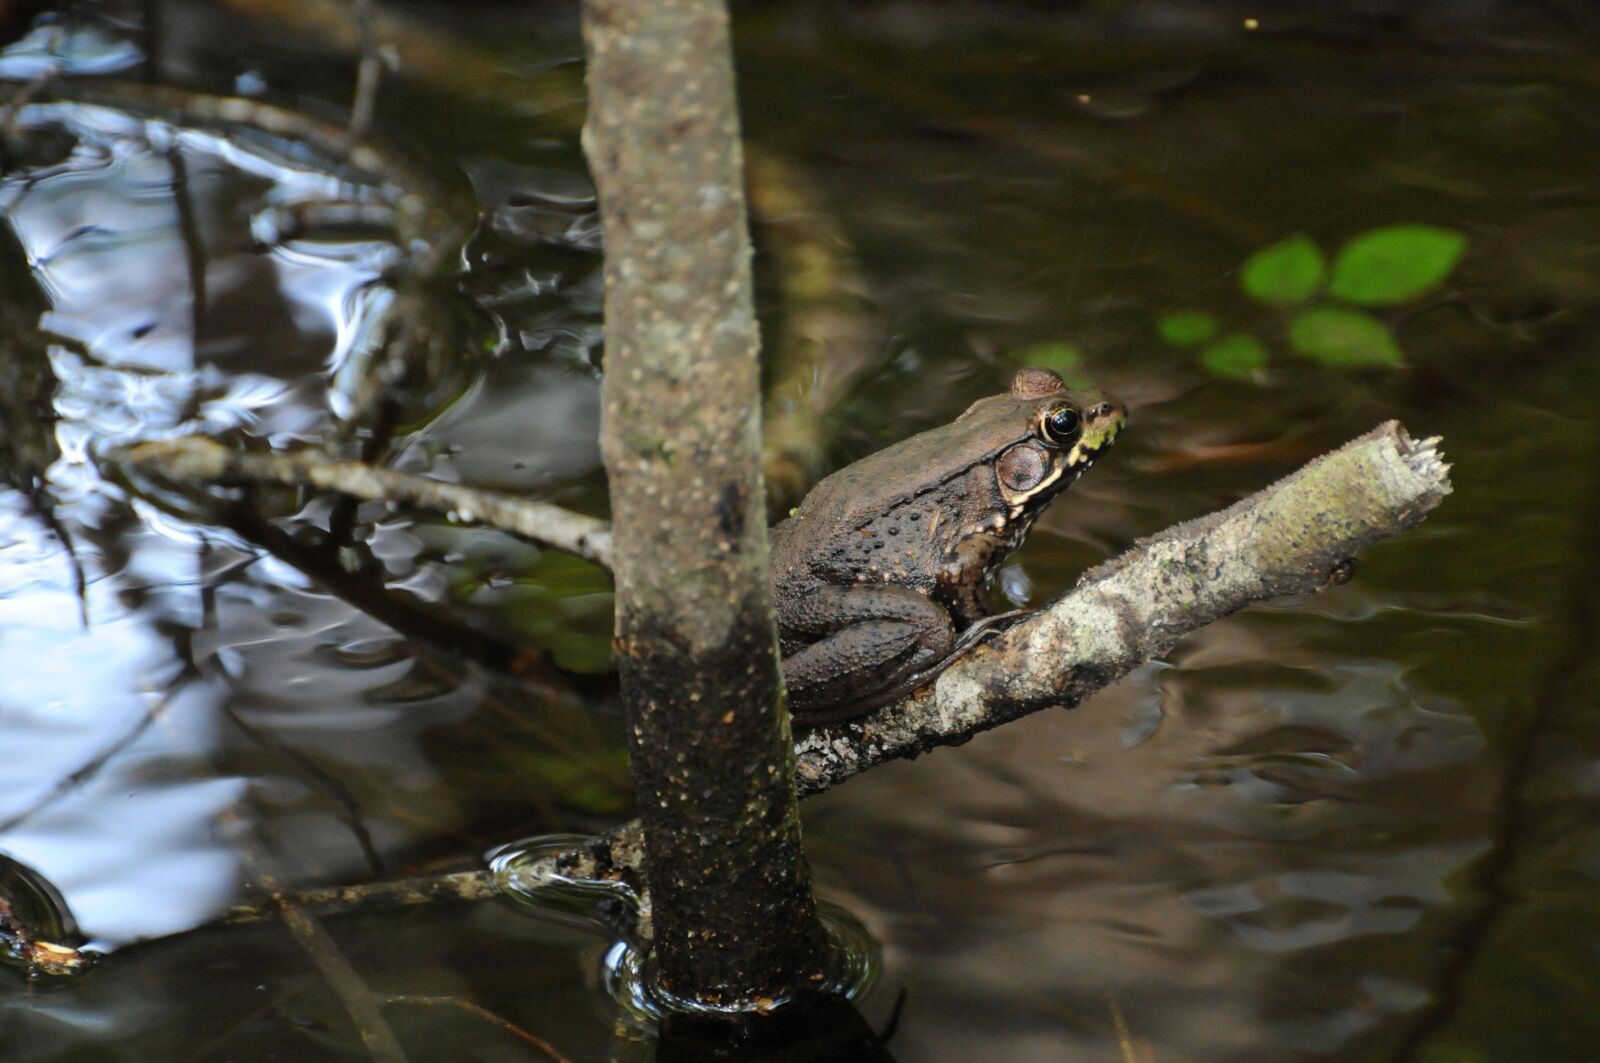 Nikon AF-S Nikkor 70-300mm F4.5-5.6G VR sample photo. River, frog, amphibian, branch photography